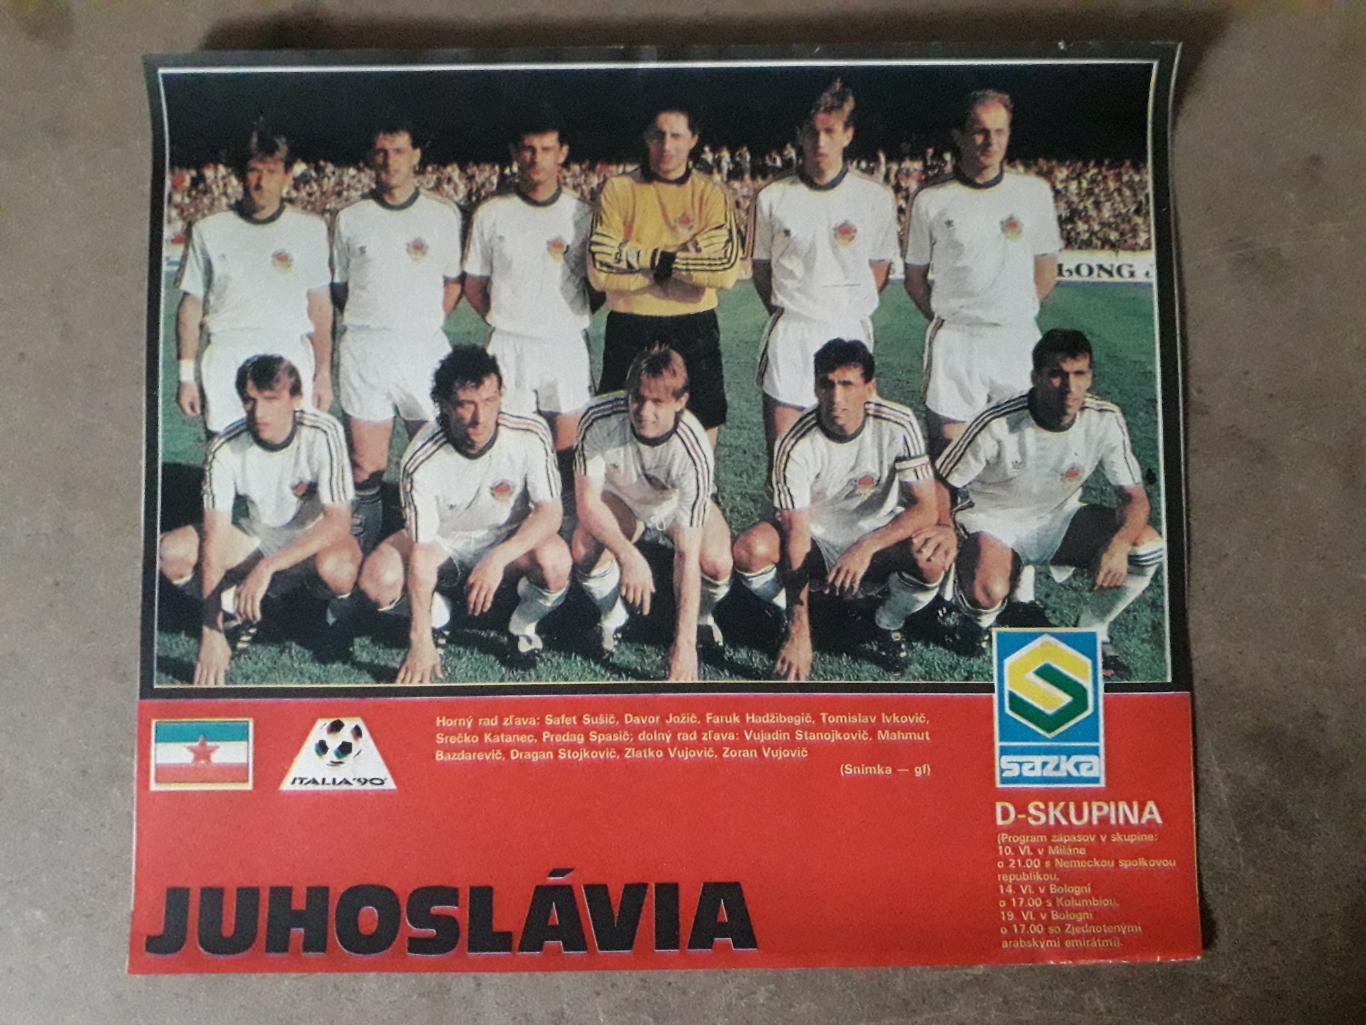 Постер A4- Jugoslavie